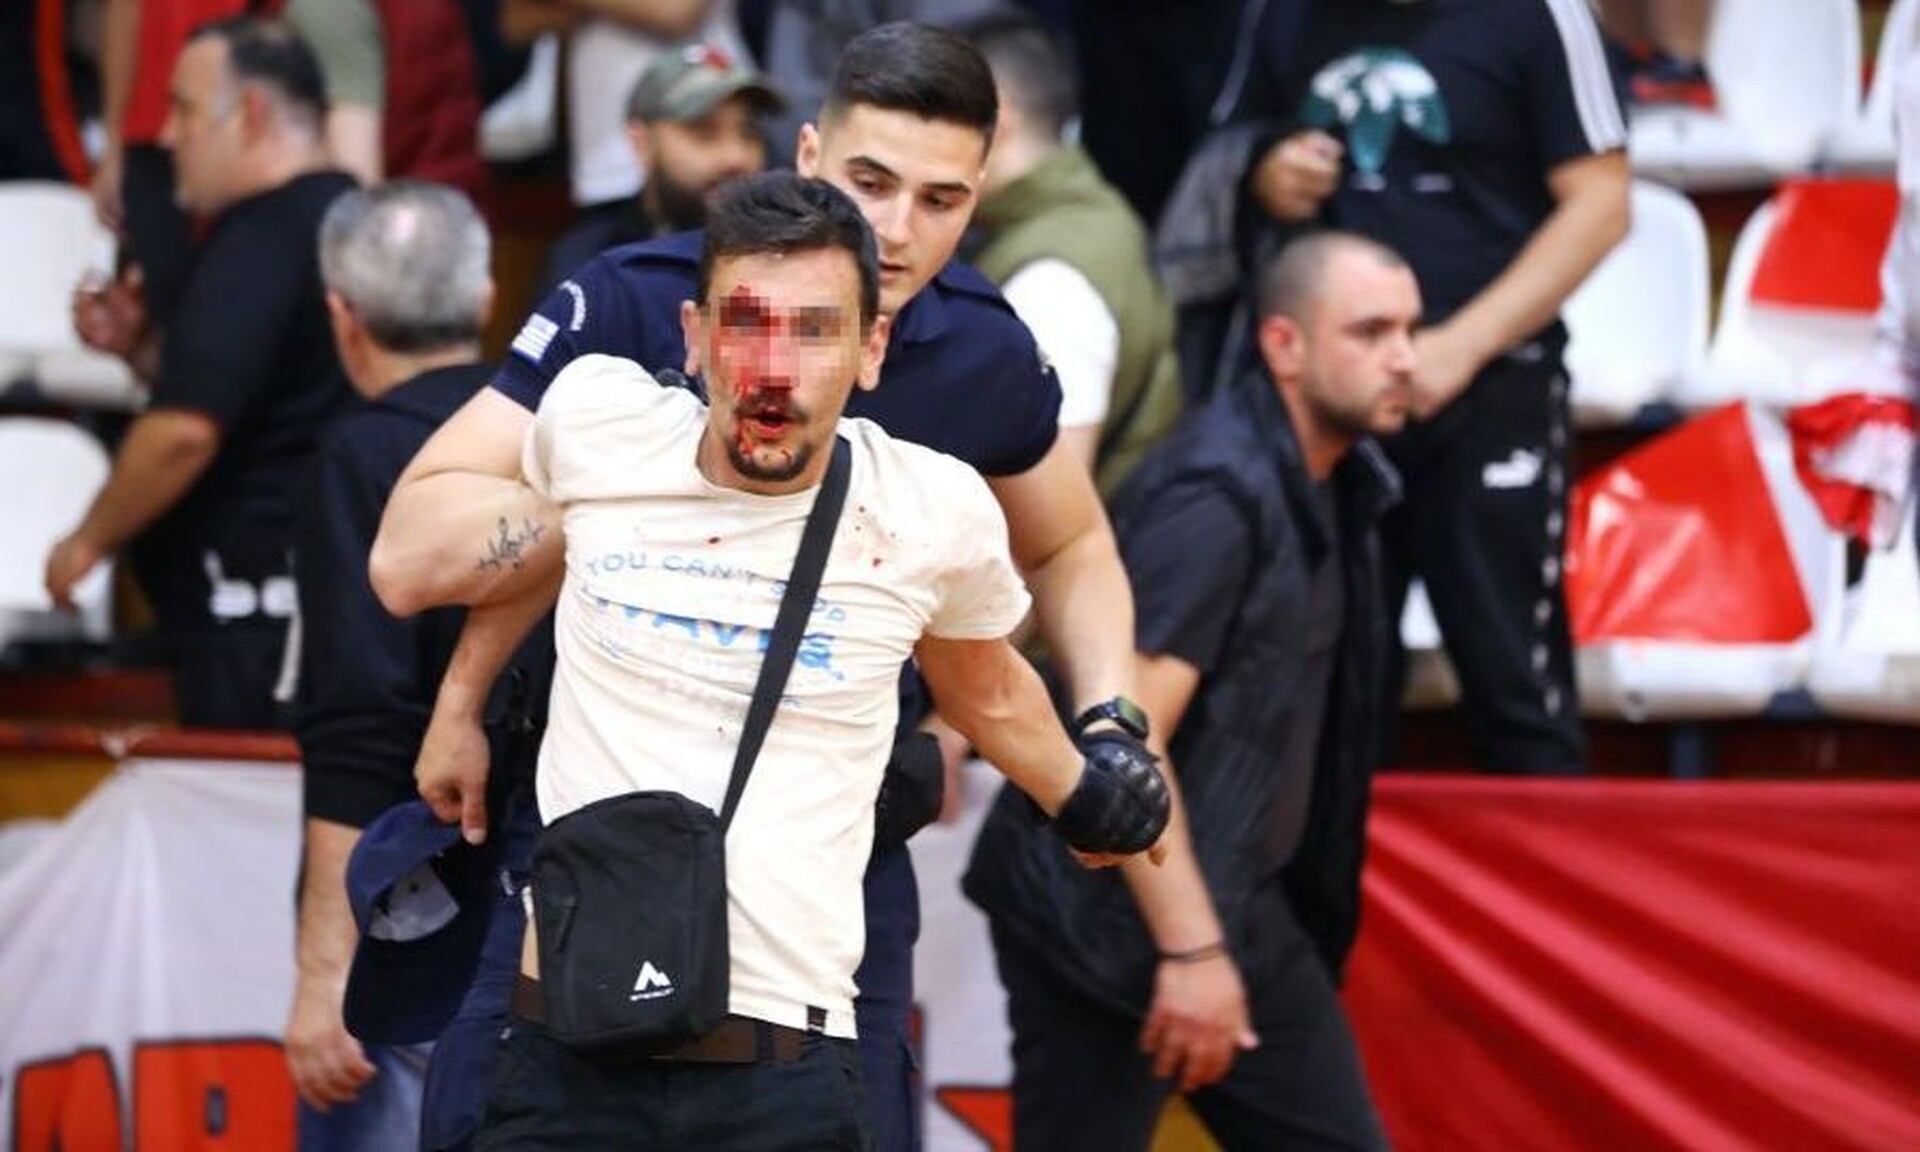 Σοβαρά επεισόδια στην Καισαριανή σε αγώνα μπάσκετ - Σκληρές εικόνες